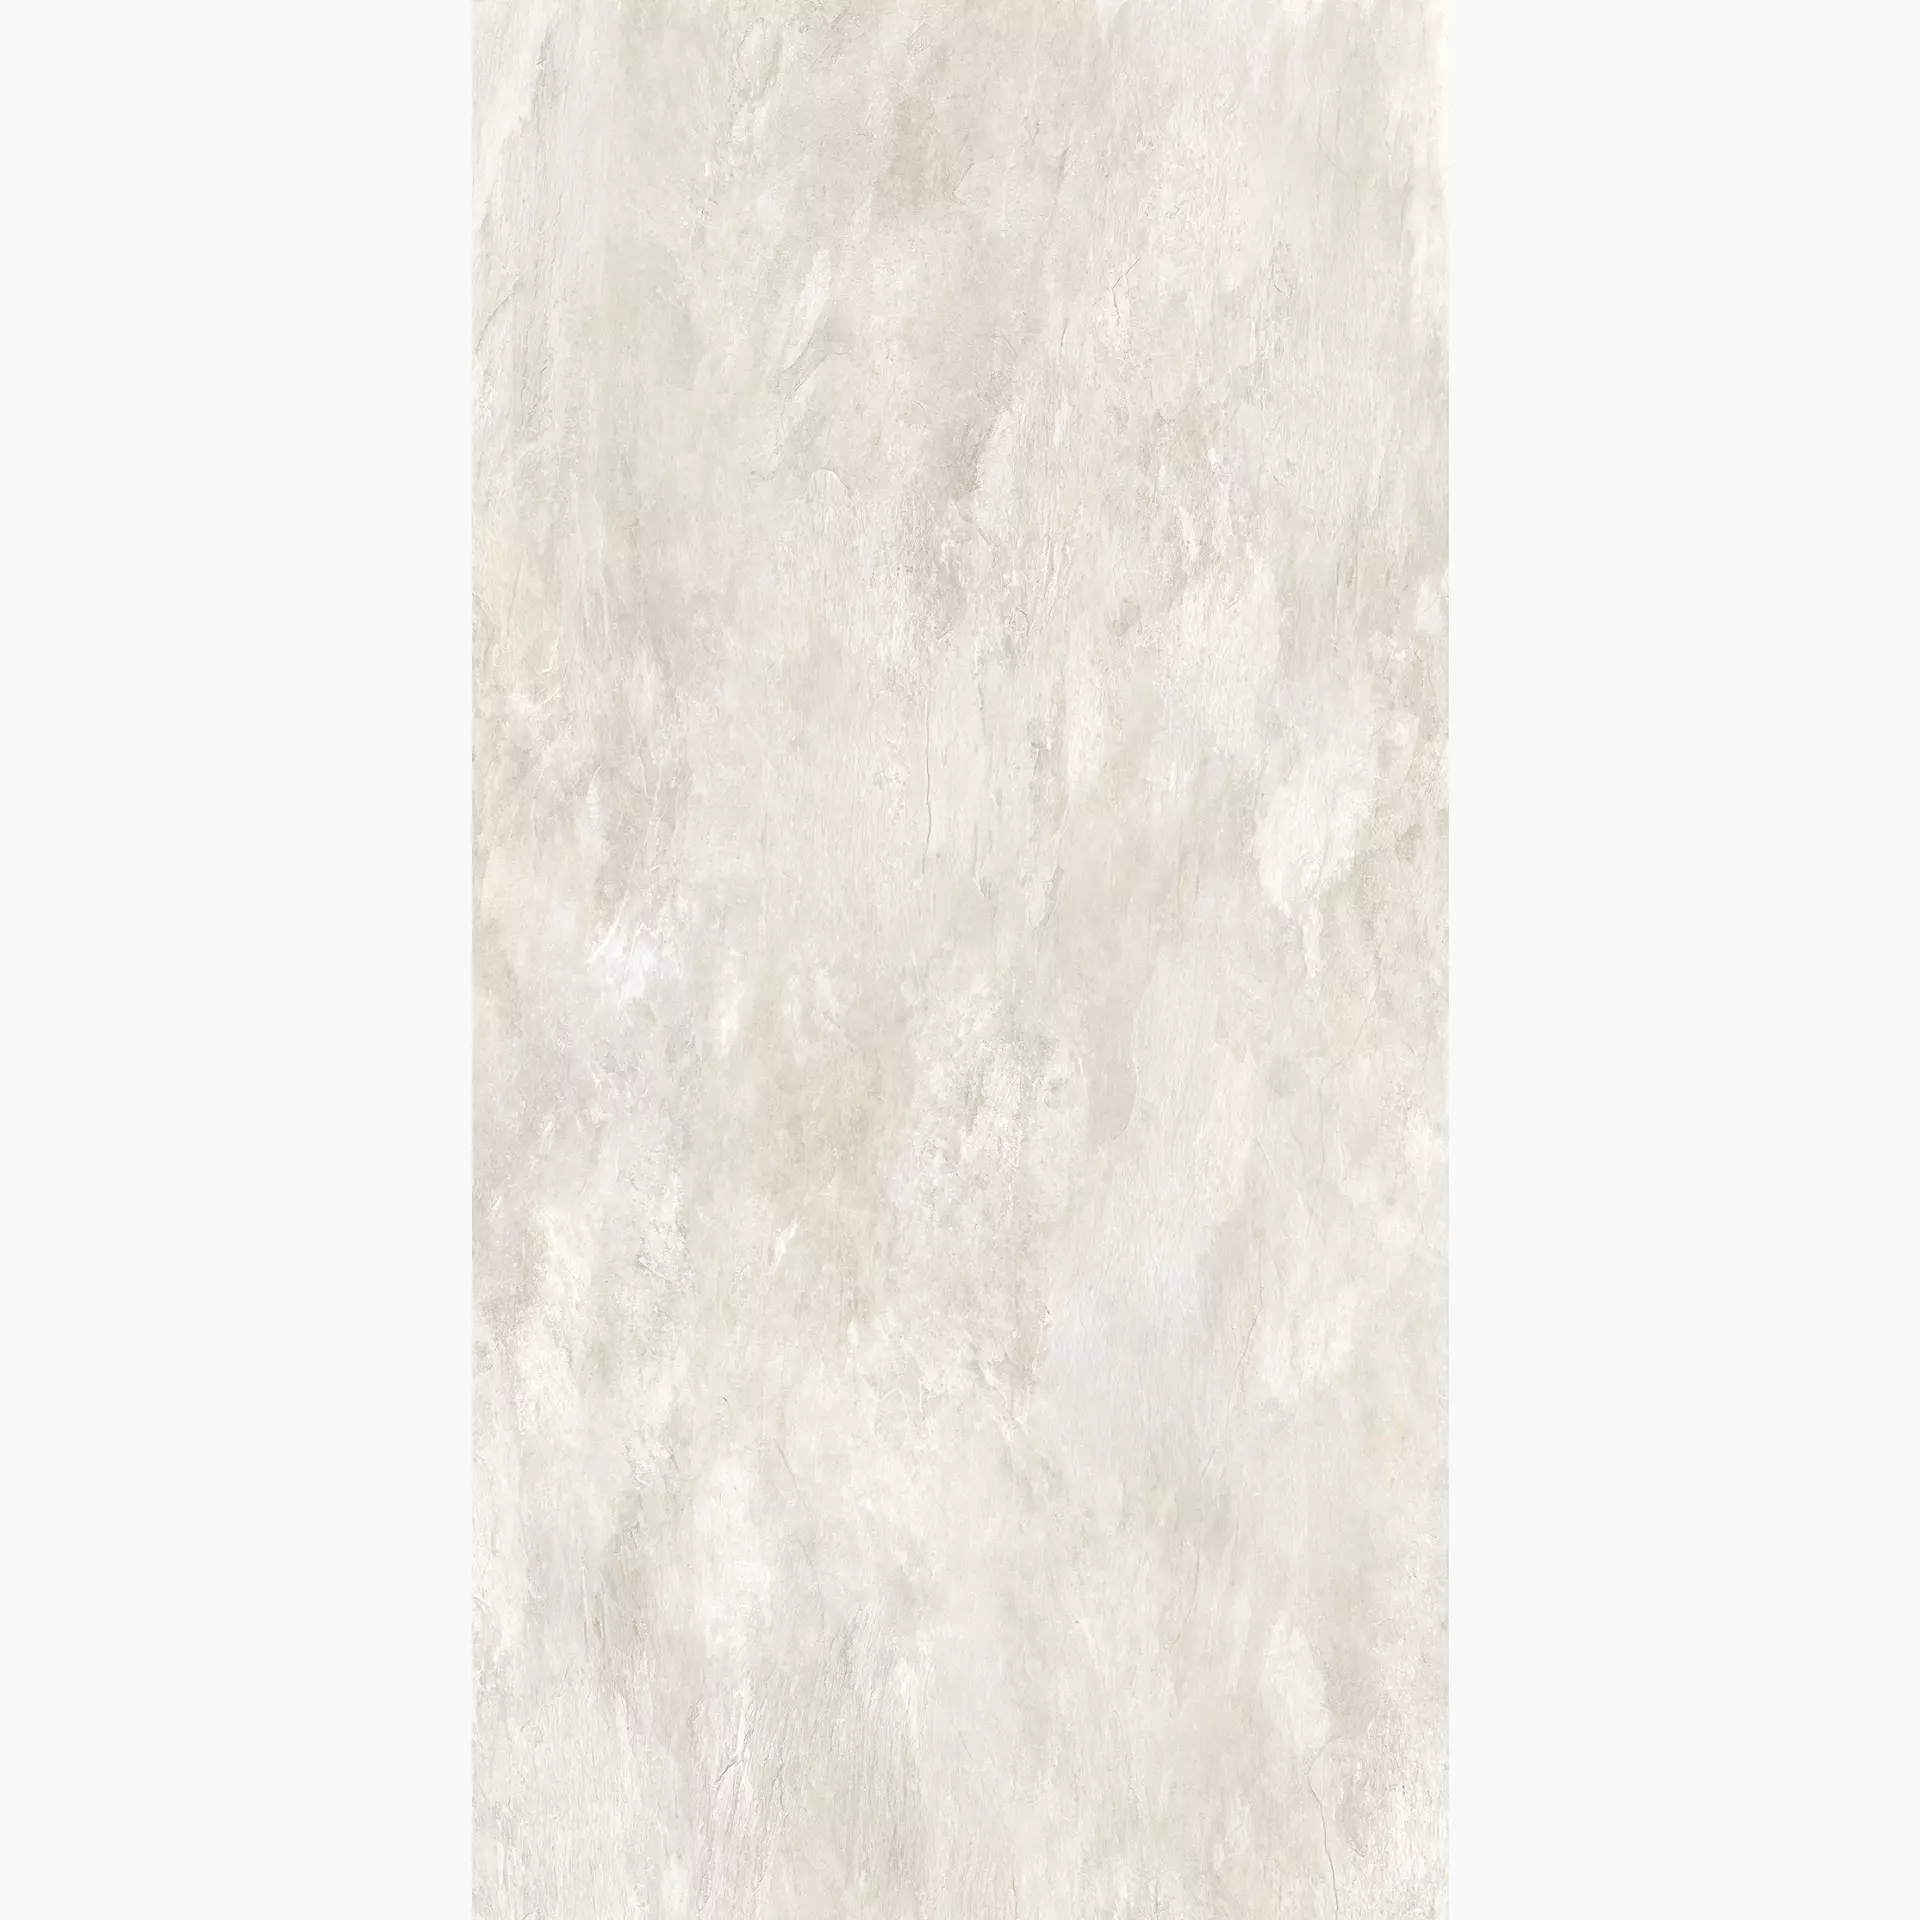 Florim Ardoise Blanc Naturale – Matt Blanc 745920 matt natur 120x240cm rektifiziert 6mm